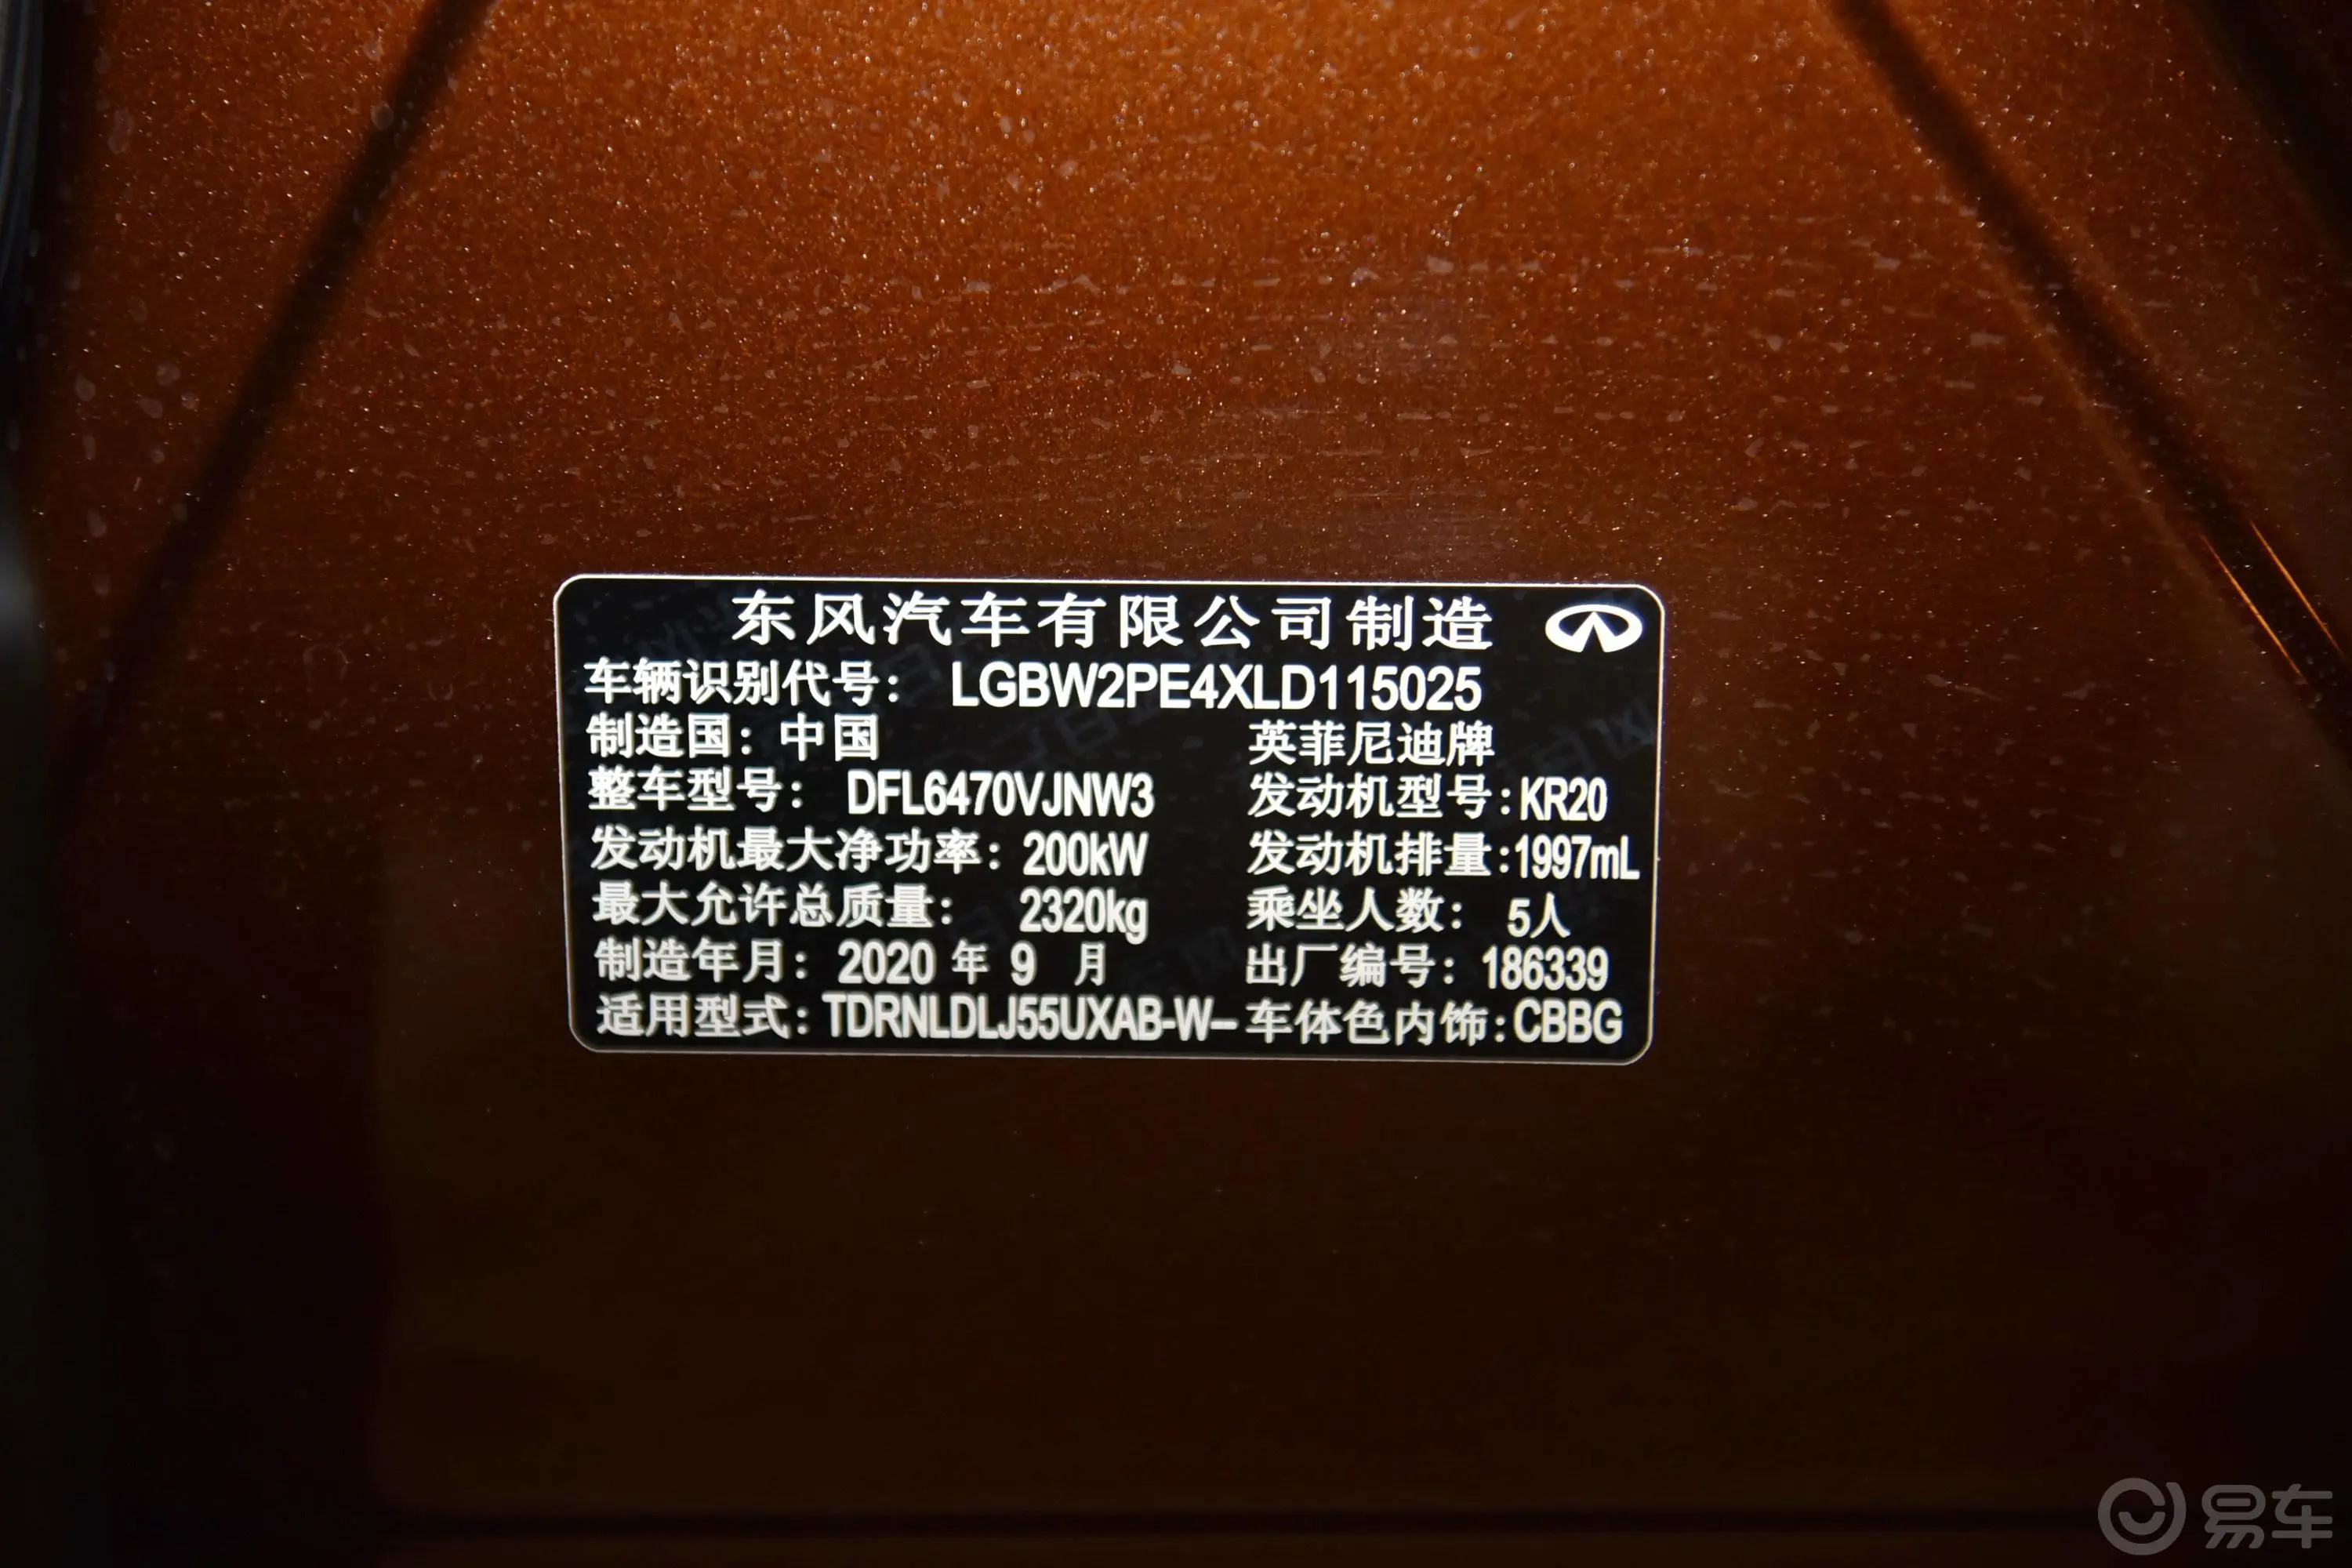 英菲尼迪QX502.0T 四驱 豪华版车辆信息铭牌